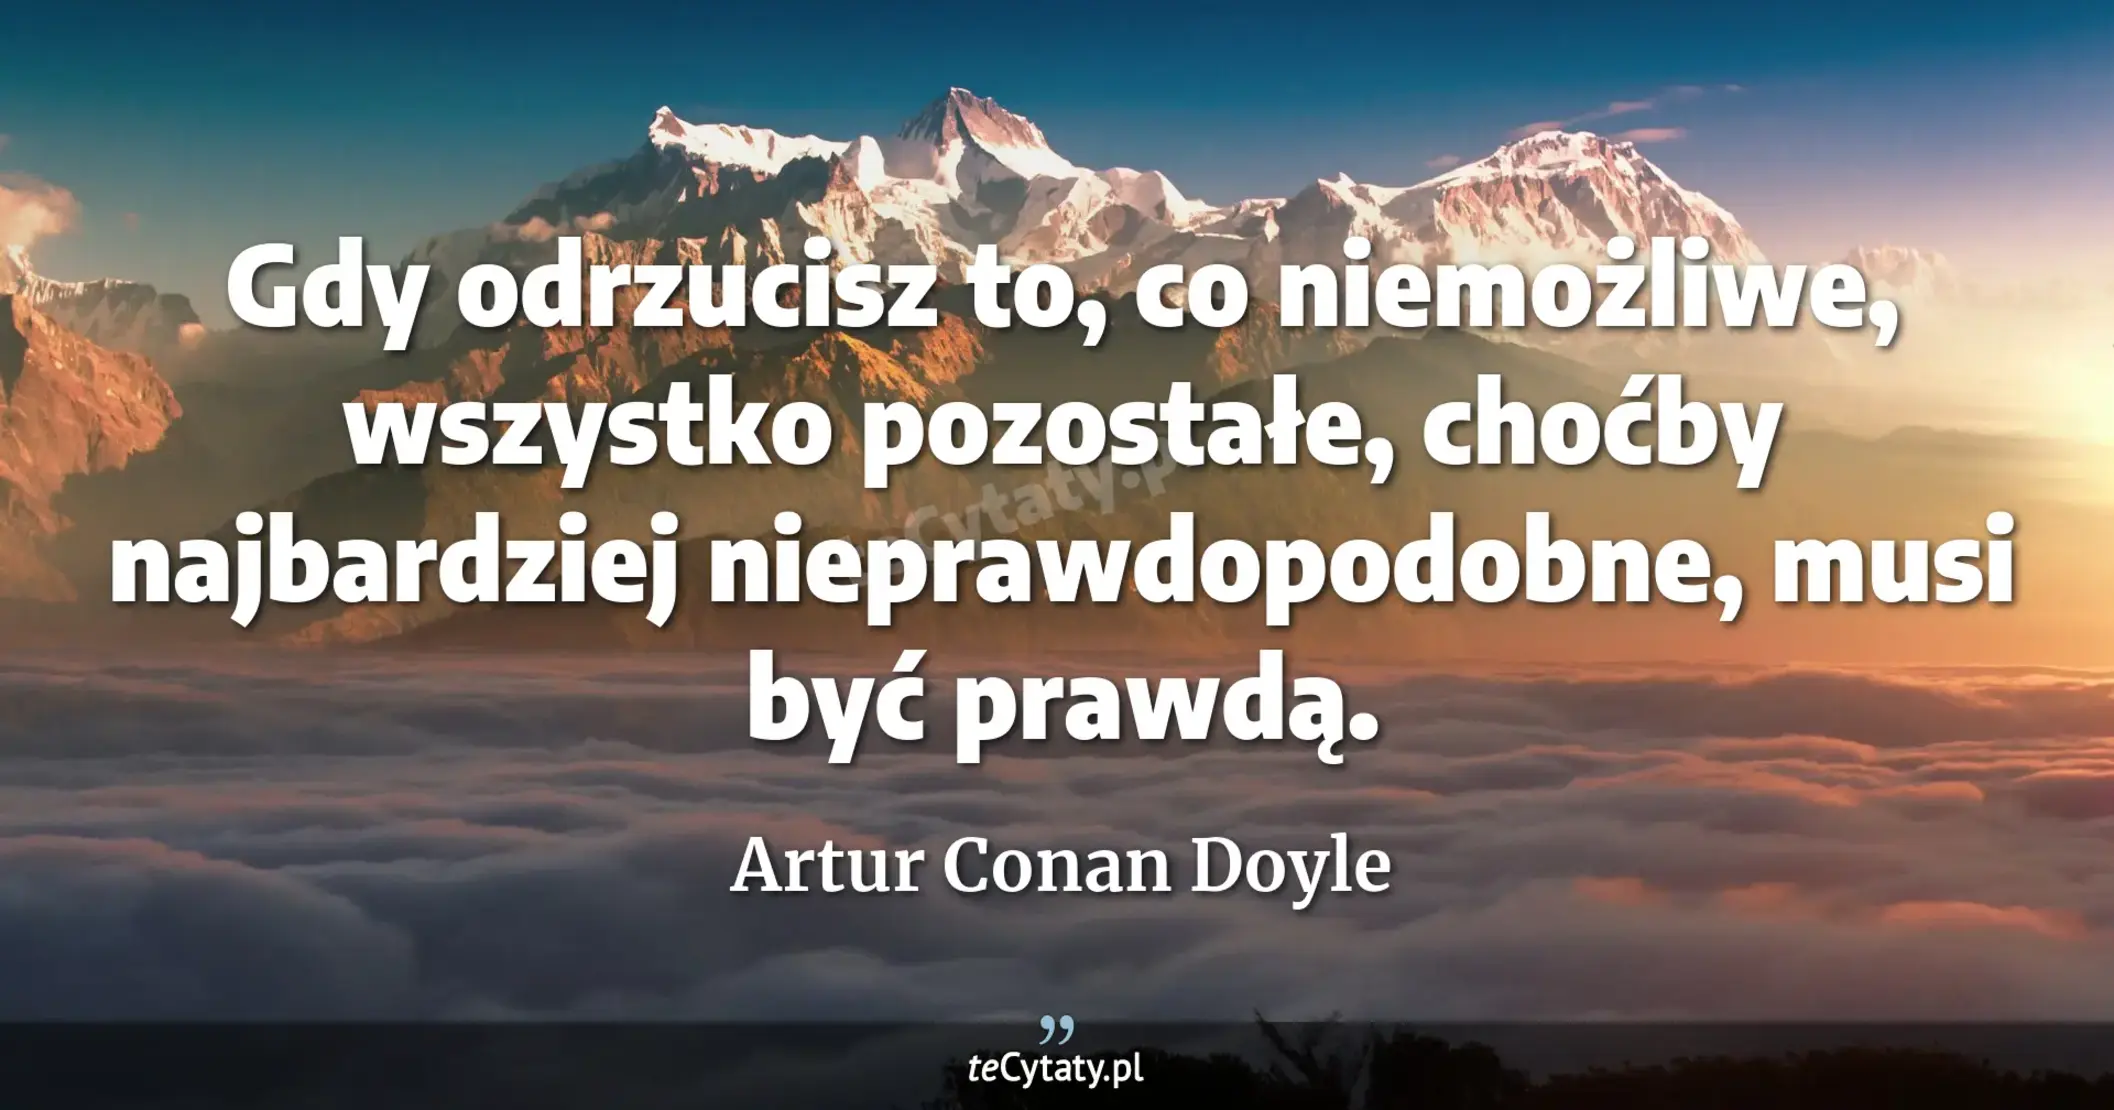 Gdy odrzucisz to, co niemożliwe, wszystko pozostałe, choćby najbardziej nieprawdopodobne, musi być prawdą. - Artur Conan Doyle